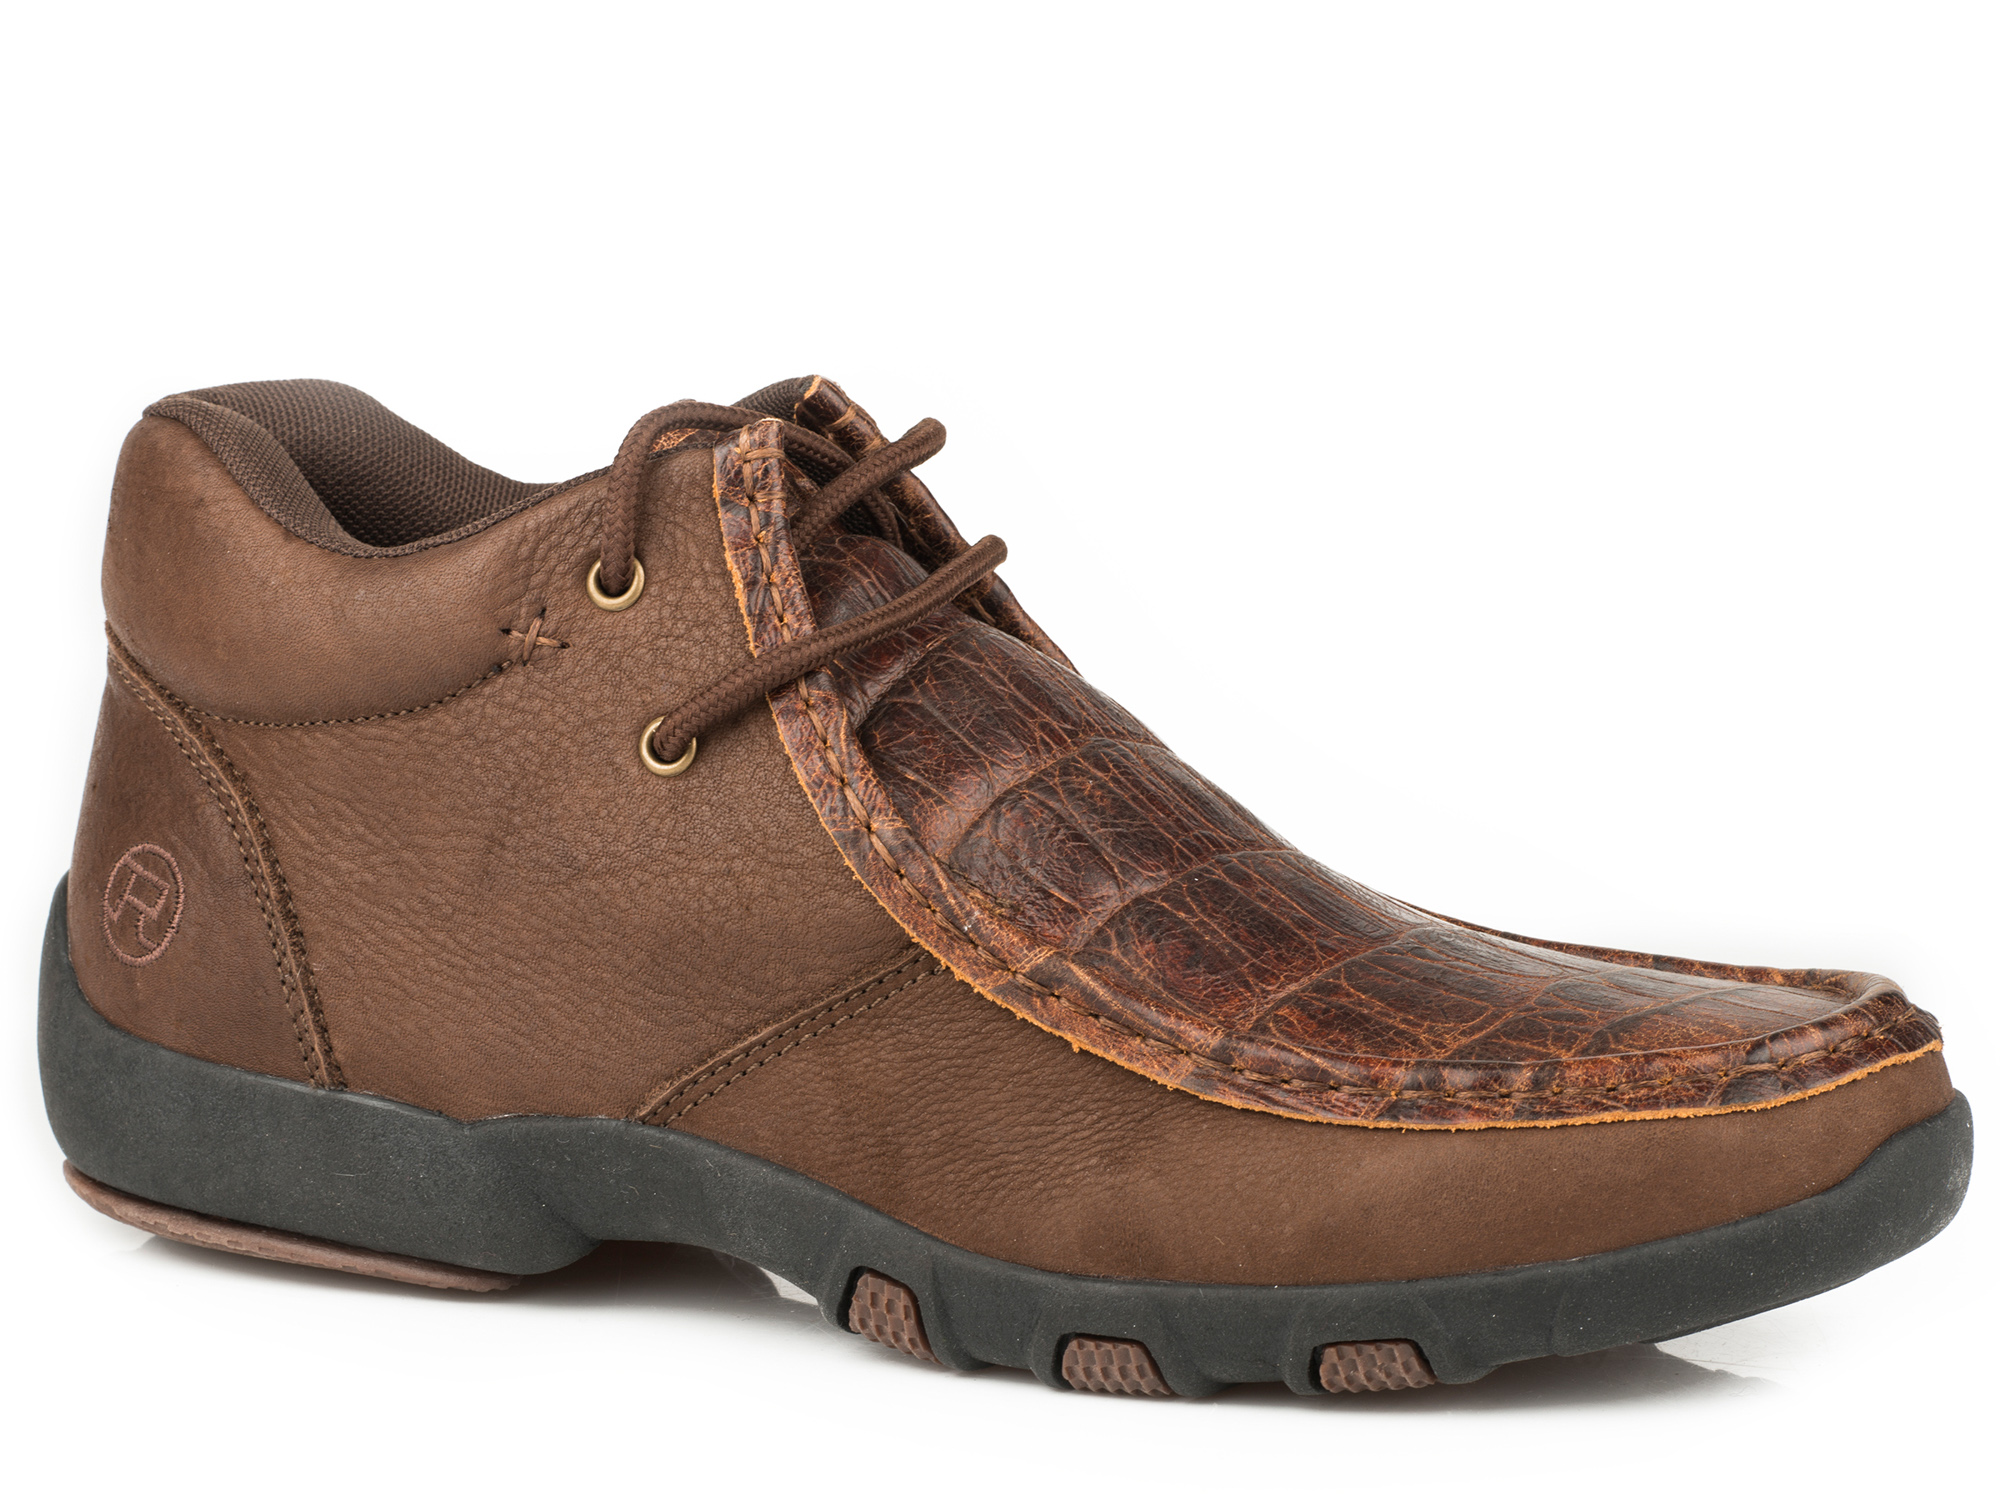 Roper Chukka Brown Leather Embossed - Footwear Men's   - 09-020-1780-2090Br - image 1 of 1